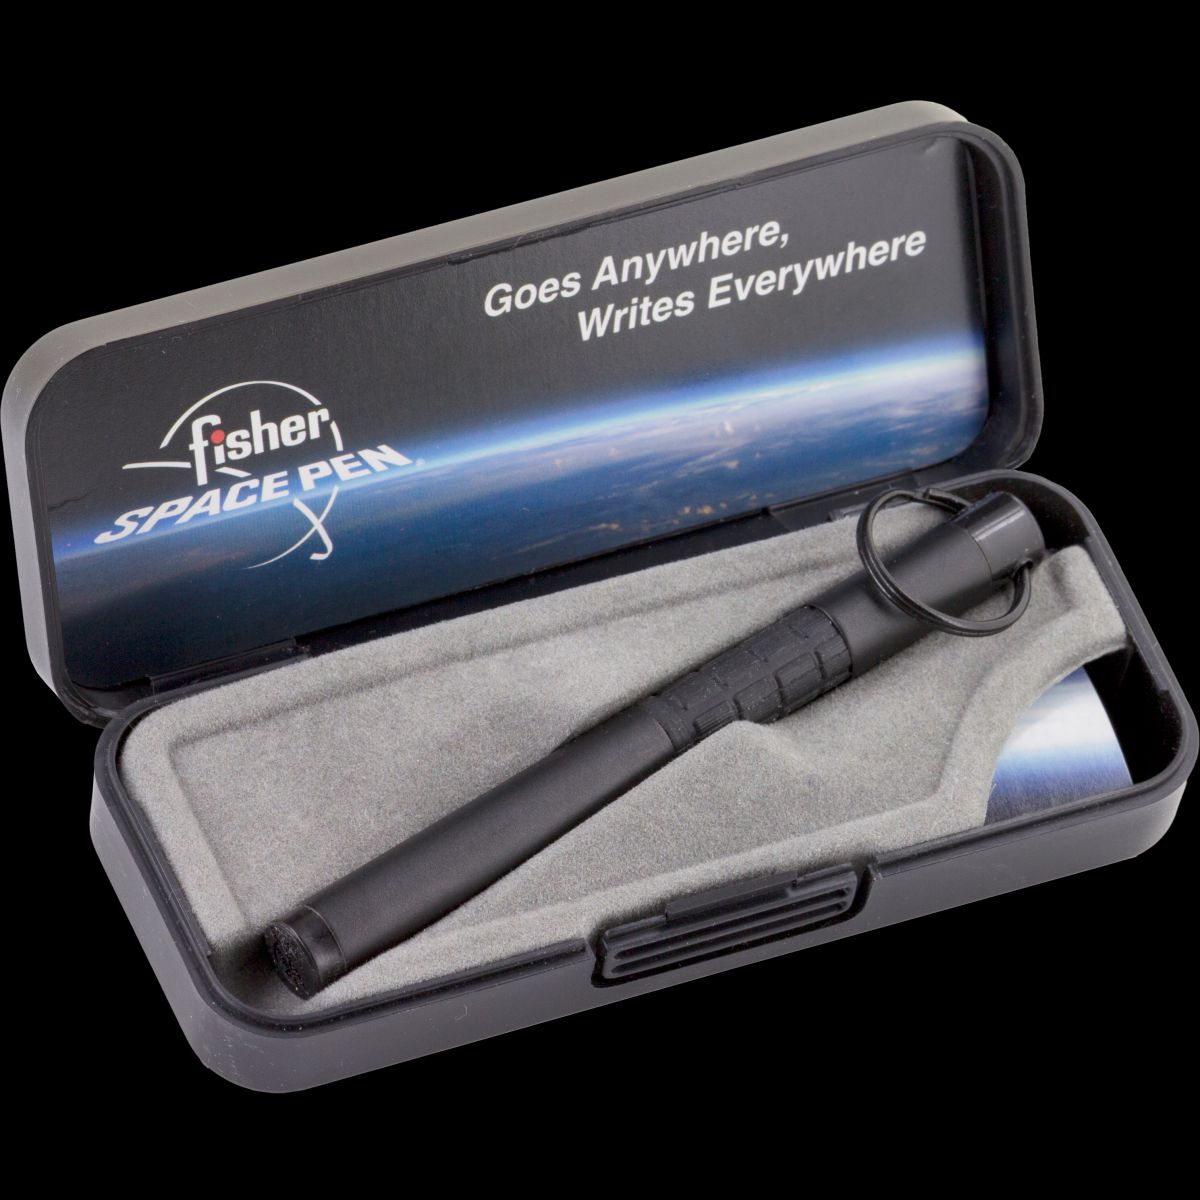 Fisher Space Pen Trekker Black Space Pen with Comfort Grip